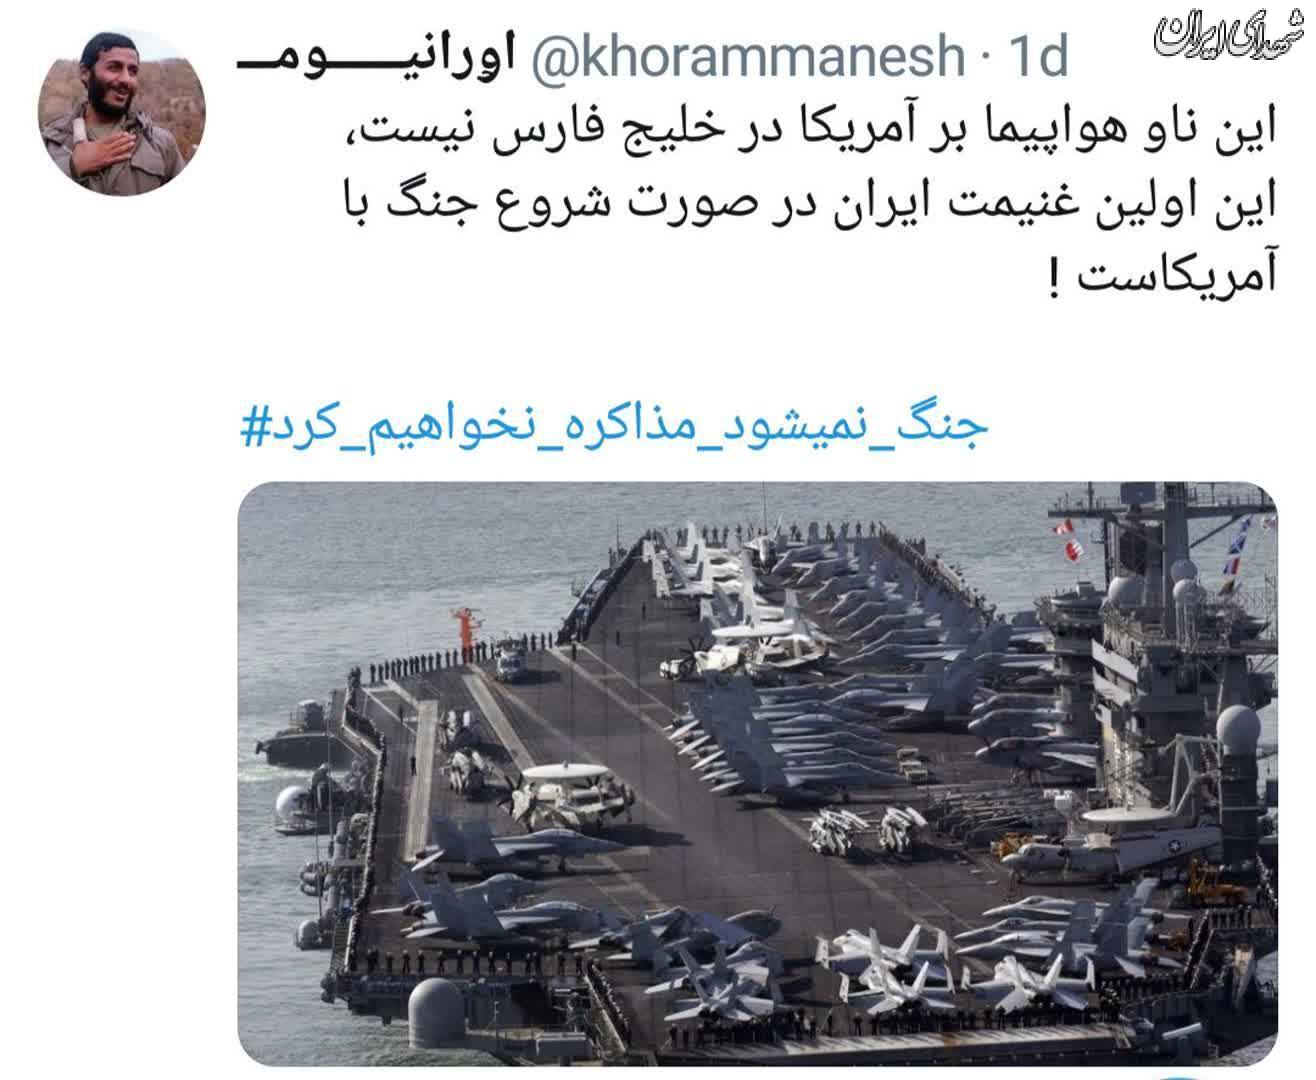 اولین غنیمت ایران در جنگ با آمریکا